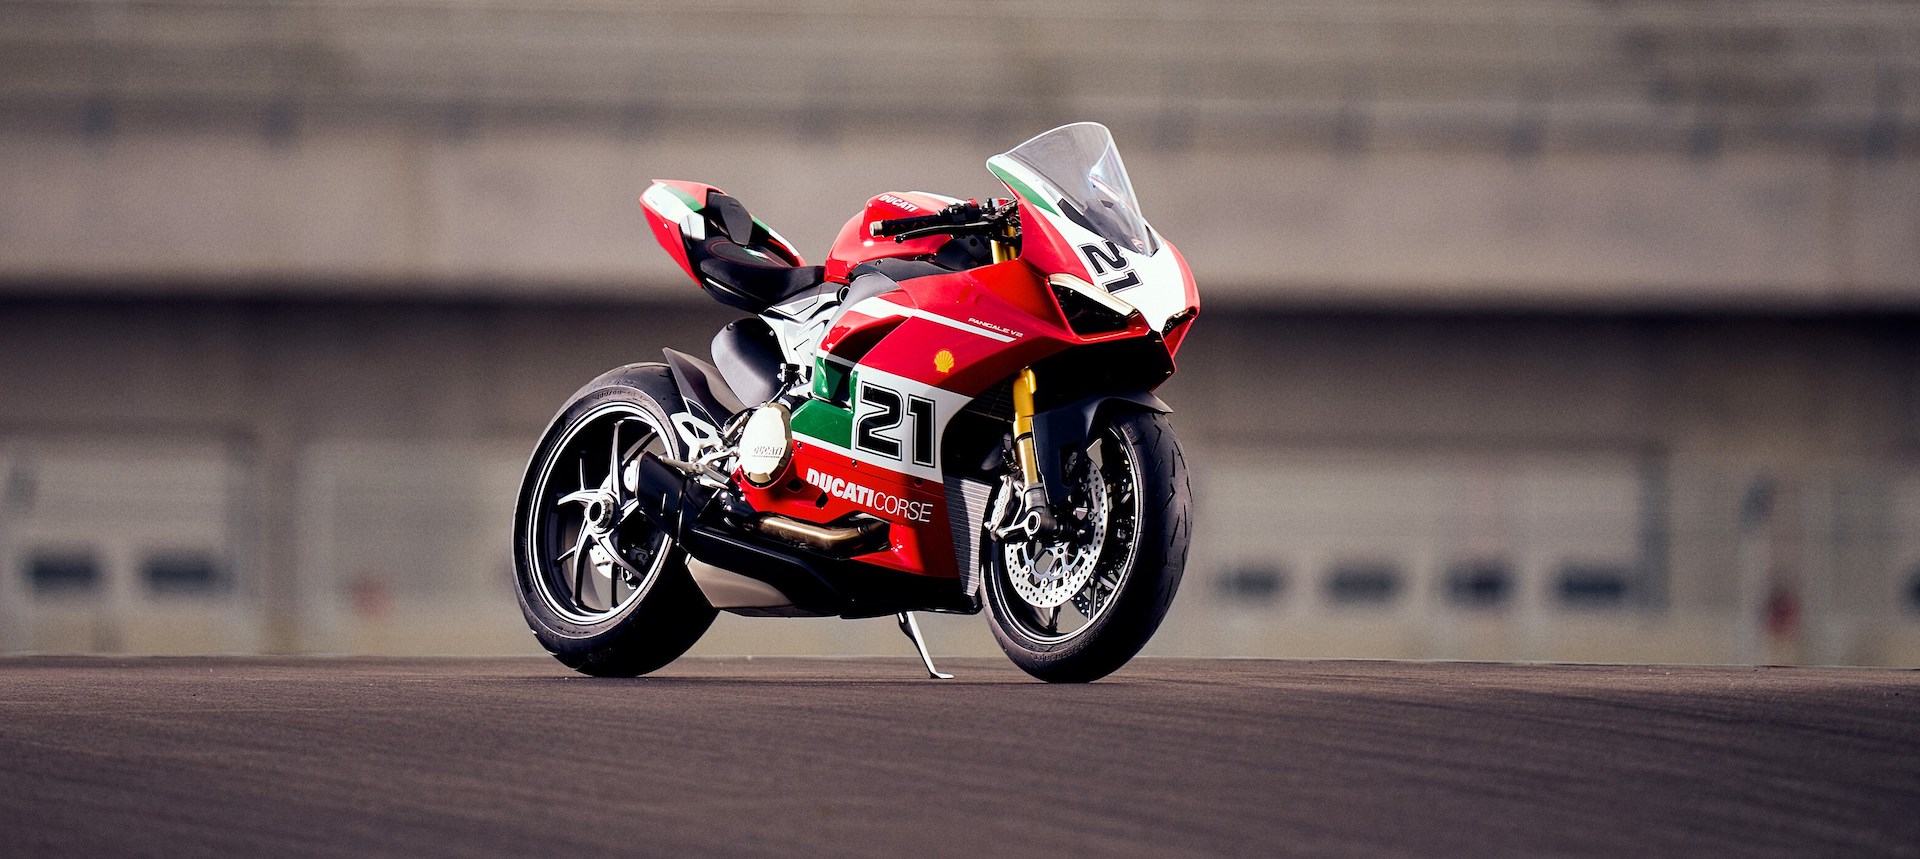 De Ducati Panigale V2 Balyliss heeft een prachtige kleurstelling